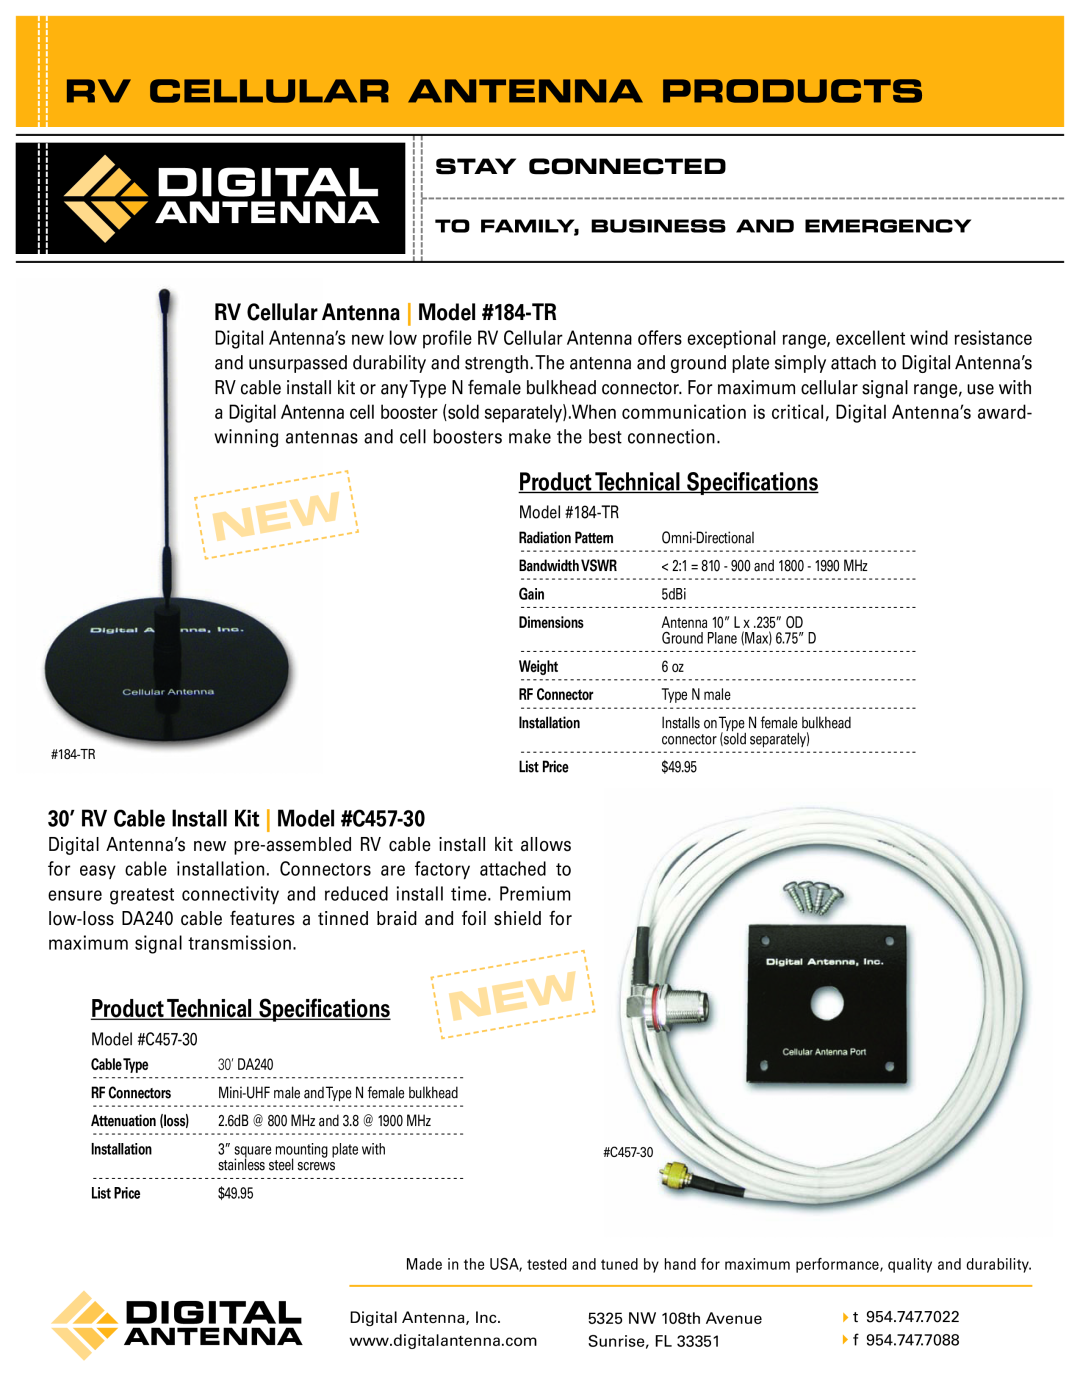 Digital Antenna 184-TR technical specifications Rv Cellular Antenna Products, ProductTechnical Specifications 